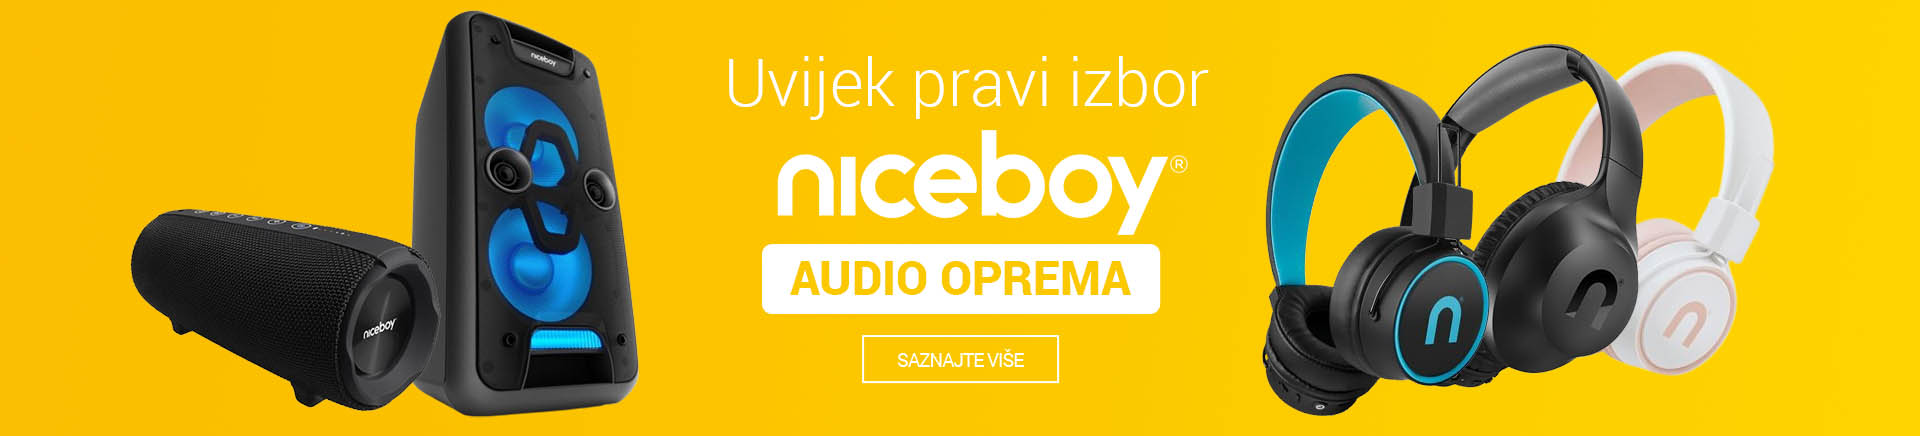 CG Niceboy audio bannerCG_TABLET 768 X 436.jpg